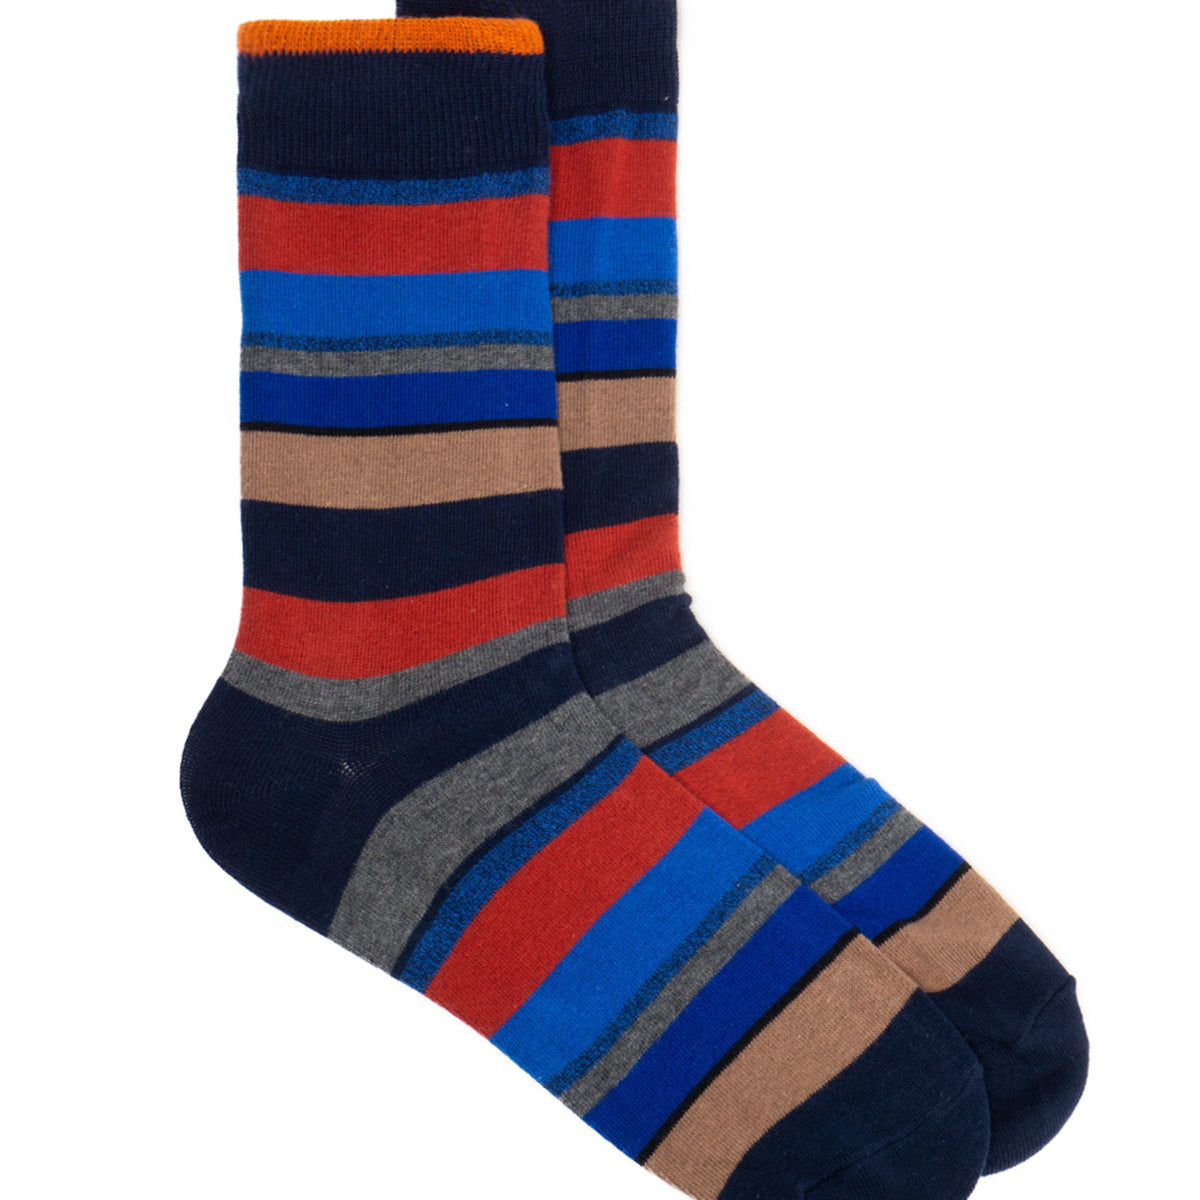 Striped Black Socks for men - Anthony of London